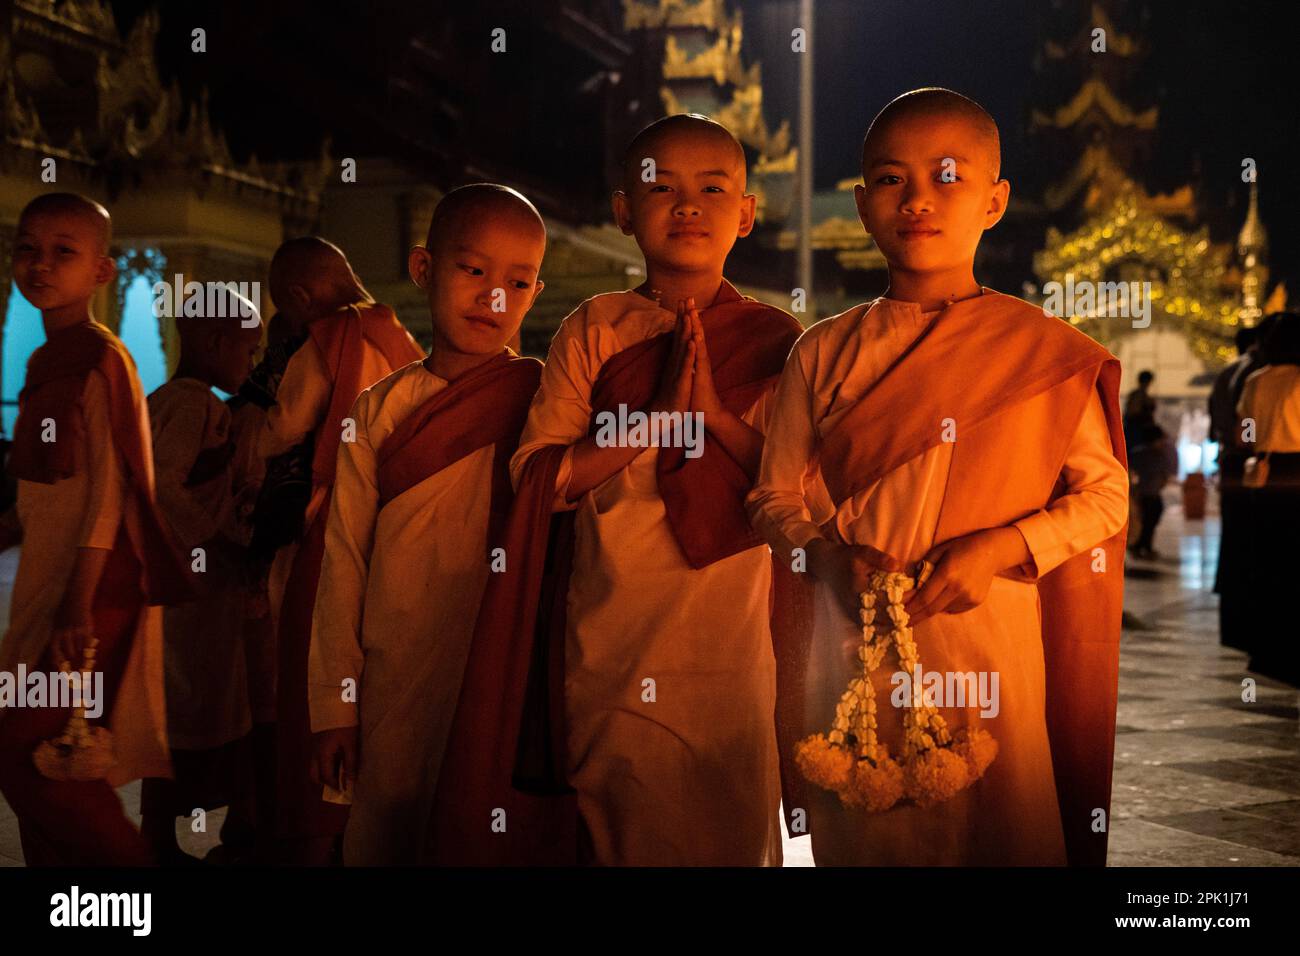 Yangon, Myanmar. 05. April 2023. Junge Mönche und Nonnen posieren für ein Porträt, während sie in der Shwedagon-Pagode in Rangun beten. Das tägliche Leben während des tödlichen Bürgerkriegs in Myanmar. Am 1. Februar 2021 ergriff die Militärjunta-Regierung (Tatmadaw) die Macht durch Putsch, sperrte die demokratisch gewählte Regierung ein und stürzte das Land in eine anhaltende humanitäre Krise. Kredit: Matt Hunt/Neato/Alamy Live News Stockfoto